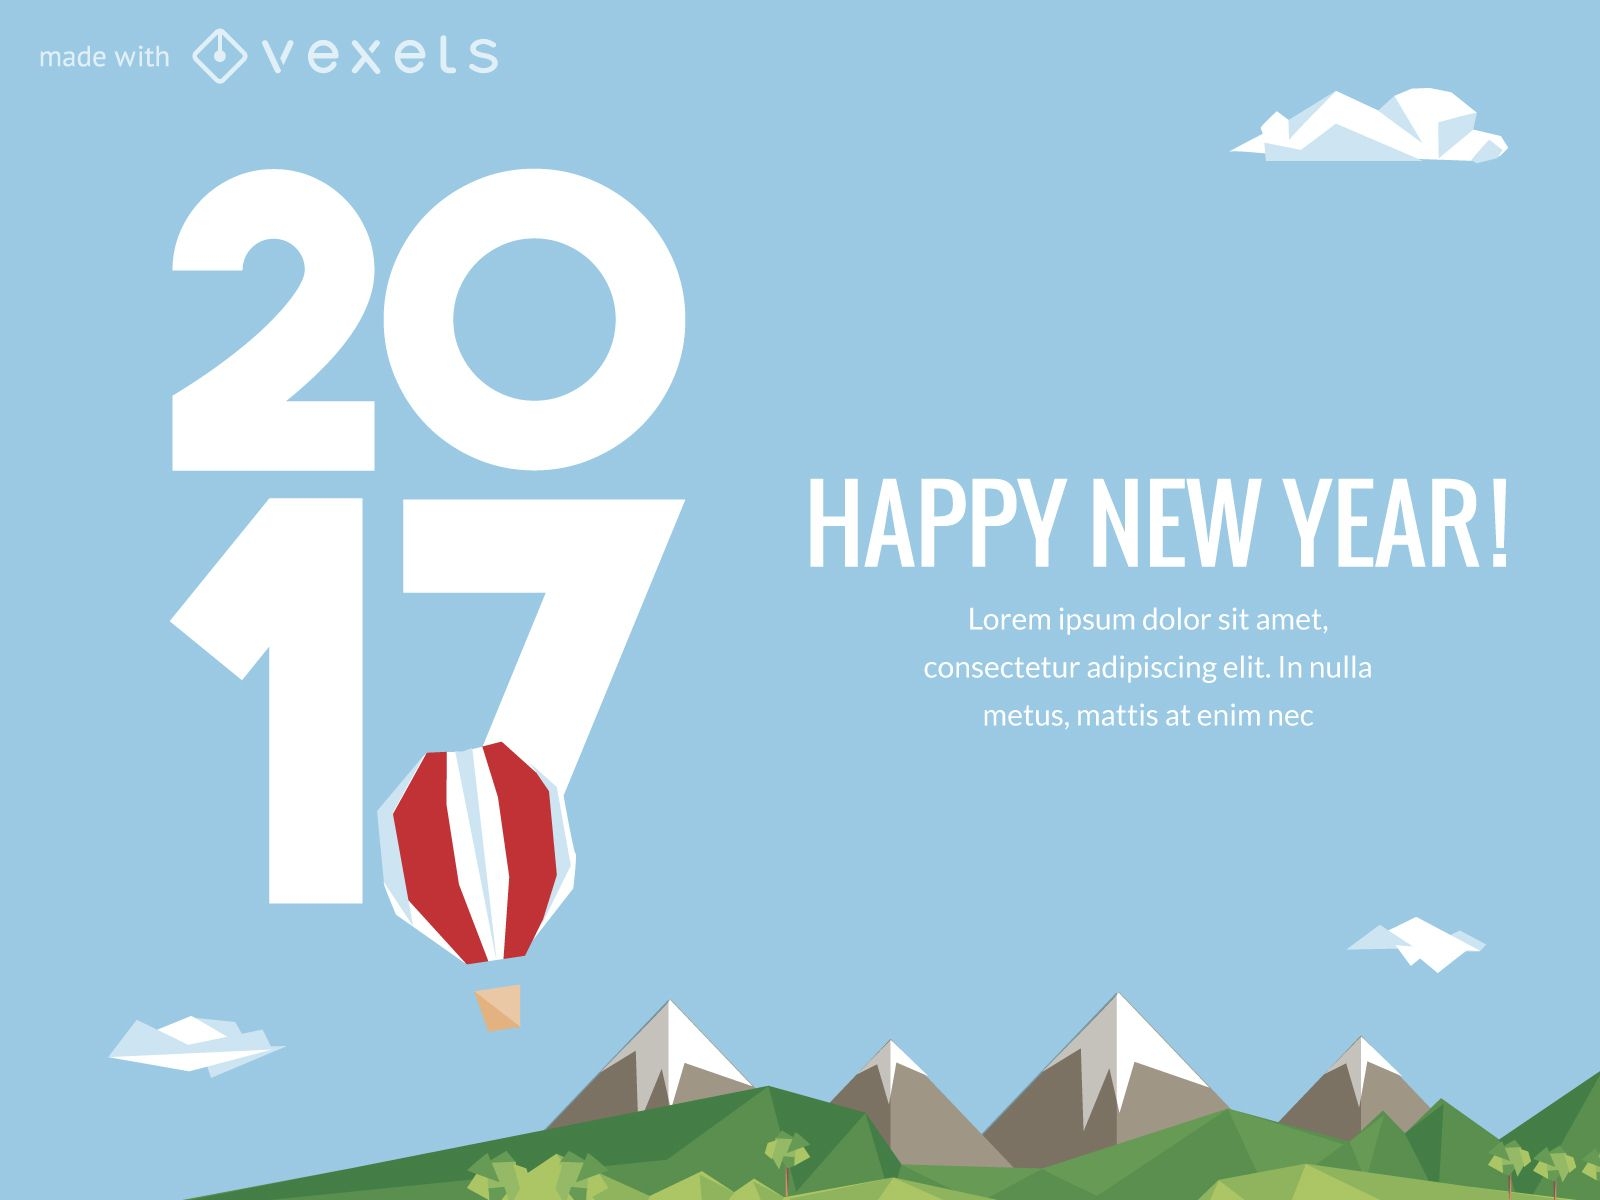 2017 New Year celebration illustration